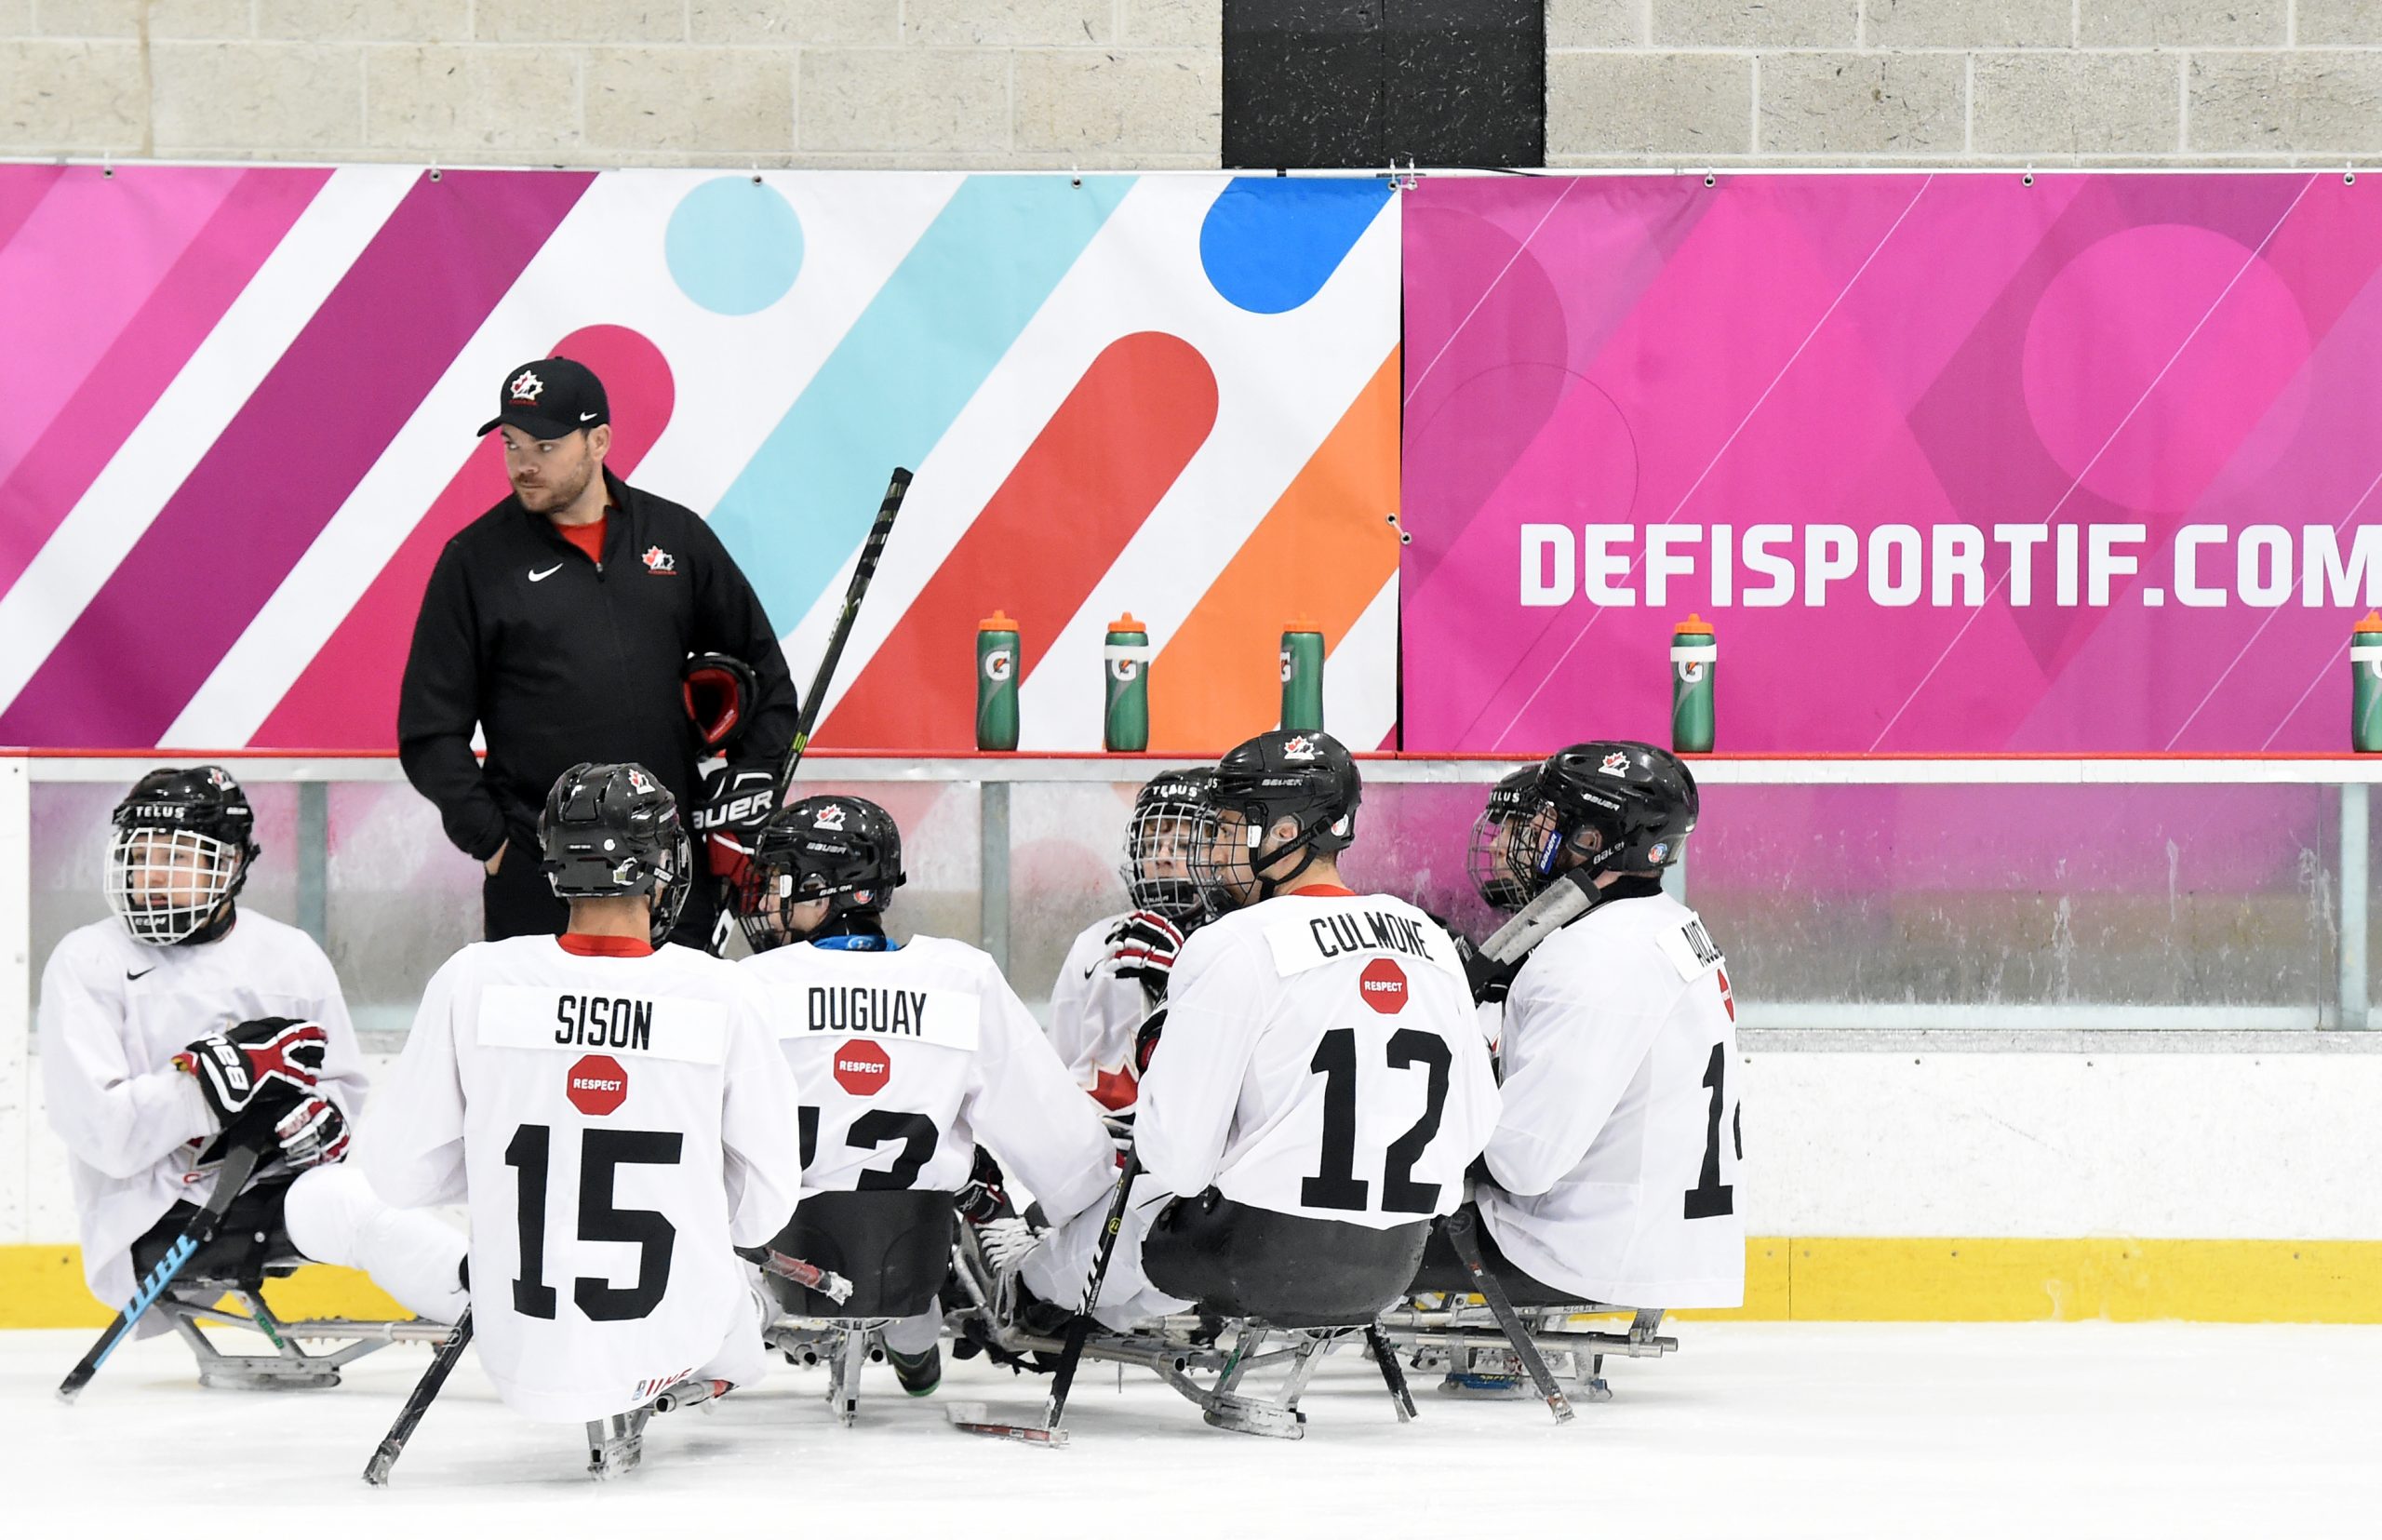 Description de l'image : L'équipe nationale canadienne de développement en parahockey se consulte sur la glace en compagnie de l'entraîneur.